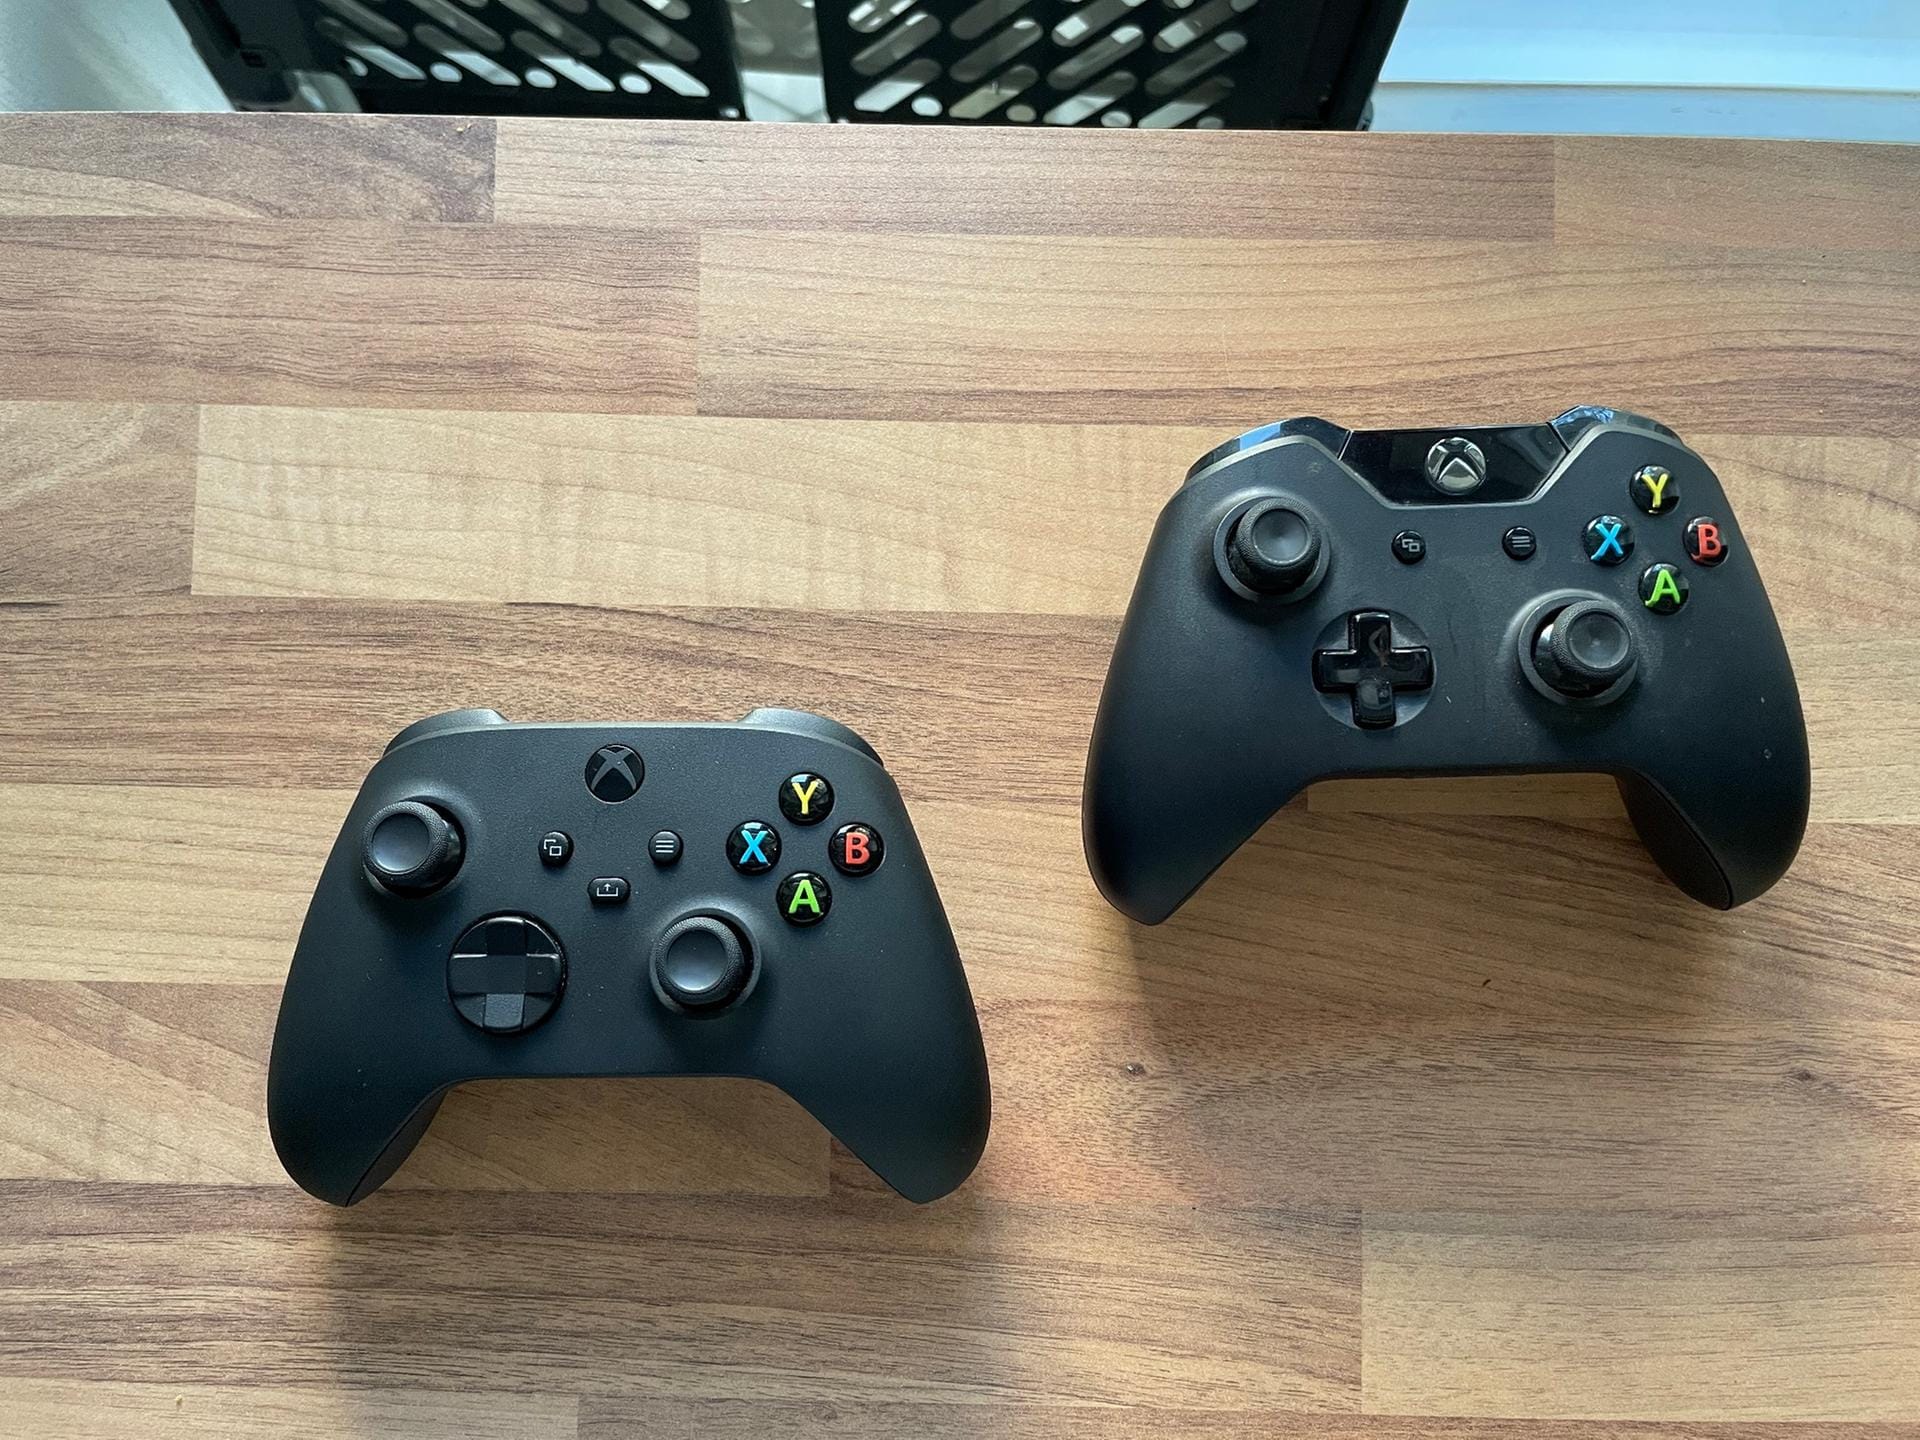 Hier der neue Controller (vorne links) und der der Xbox One im direkten Vergleich. Gut zu erkennen sind beim alten Controller die glänzenden Oberflächen. Sie sind beim neuen Modell entfallen. Insgesamt fasst sich der Neue gut an und ist dabei absolut vertraut.